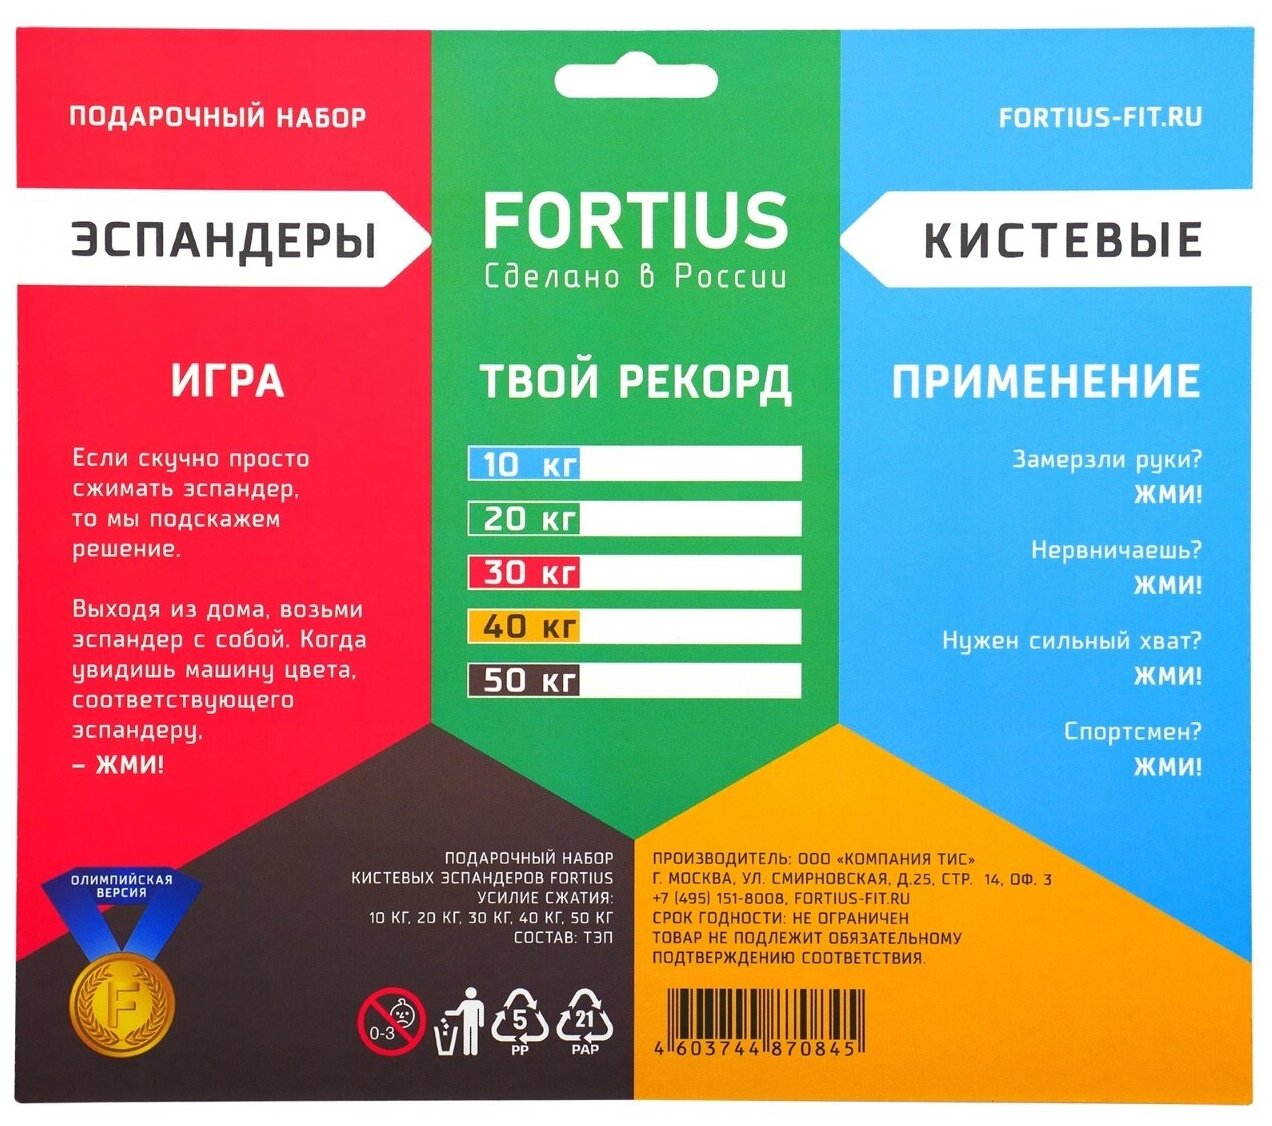 Набор кистевых эспандеров "Fortius", 5 шт. (10-50 кг) (подложка)